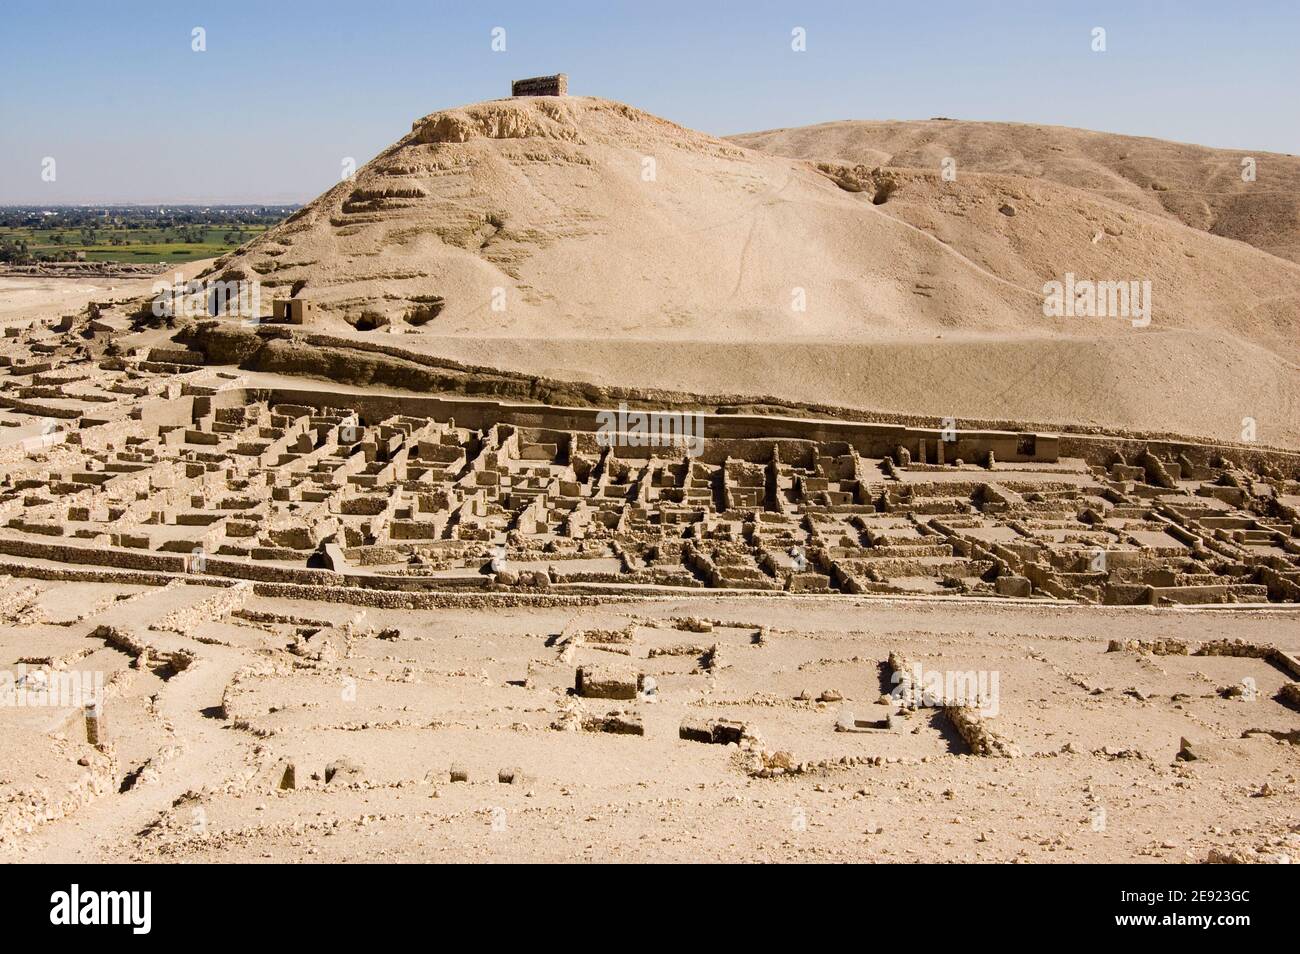 Le rovine dell'antico villaggio dei lavoratori egiziani Deir el Medina sulla sponda occidentale del Nilo a Luxor, Egitto. Antica rovina, di oltre 1000 anni. Foto Stock